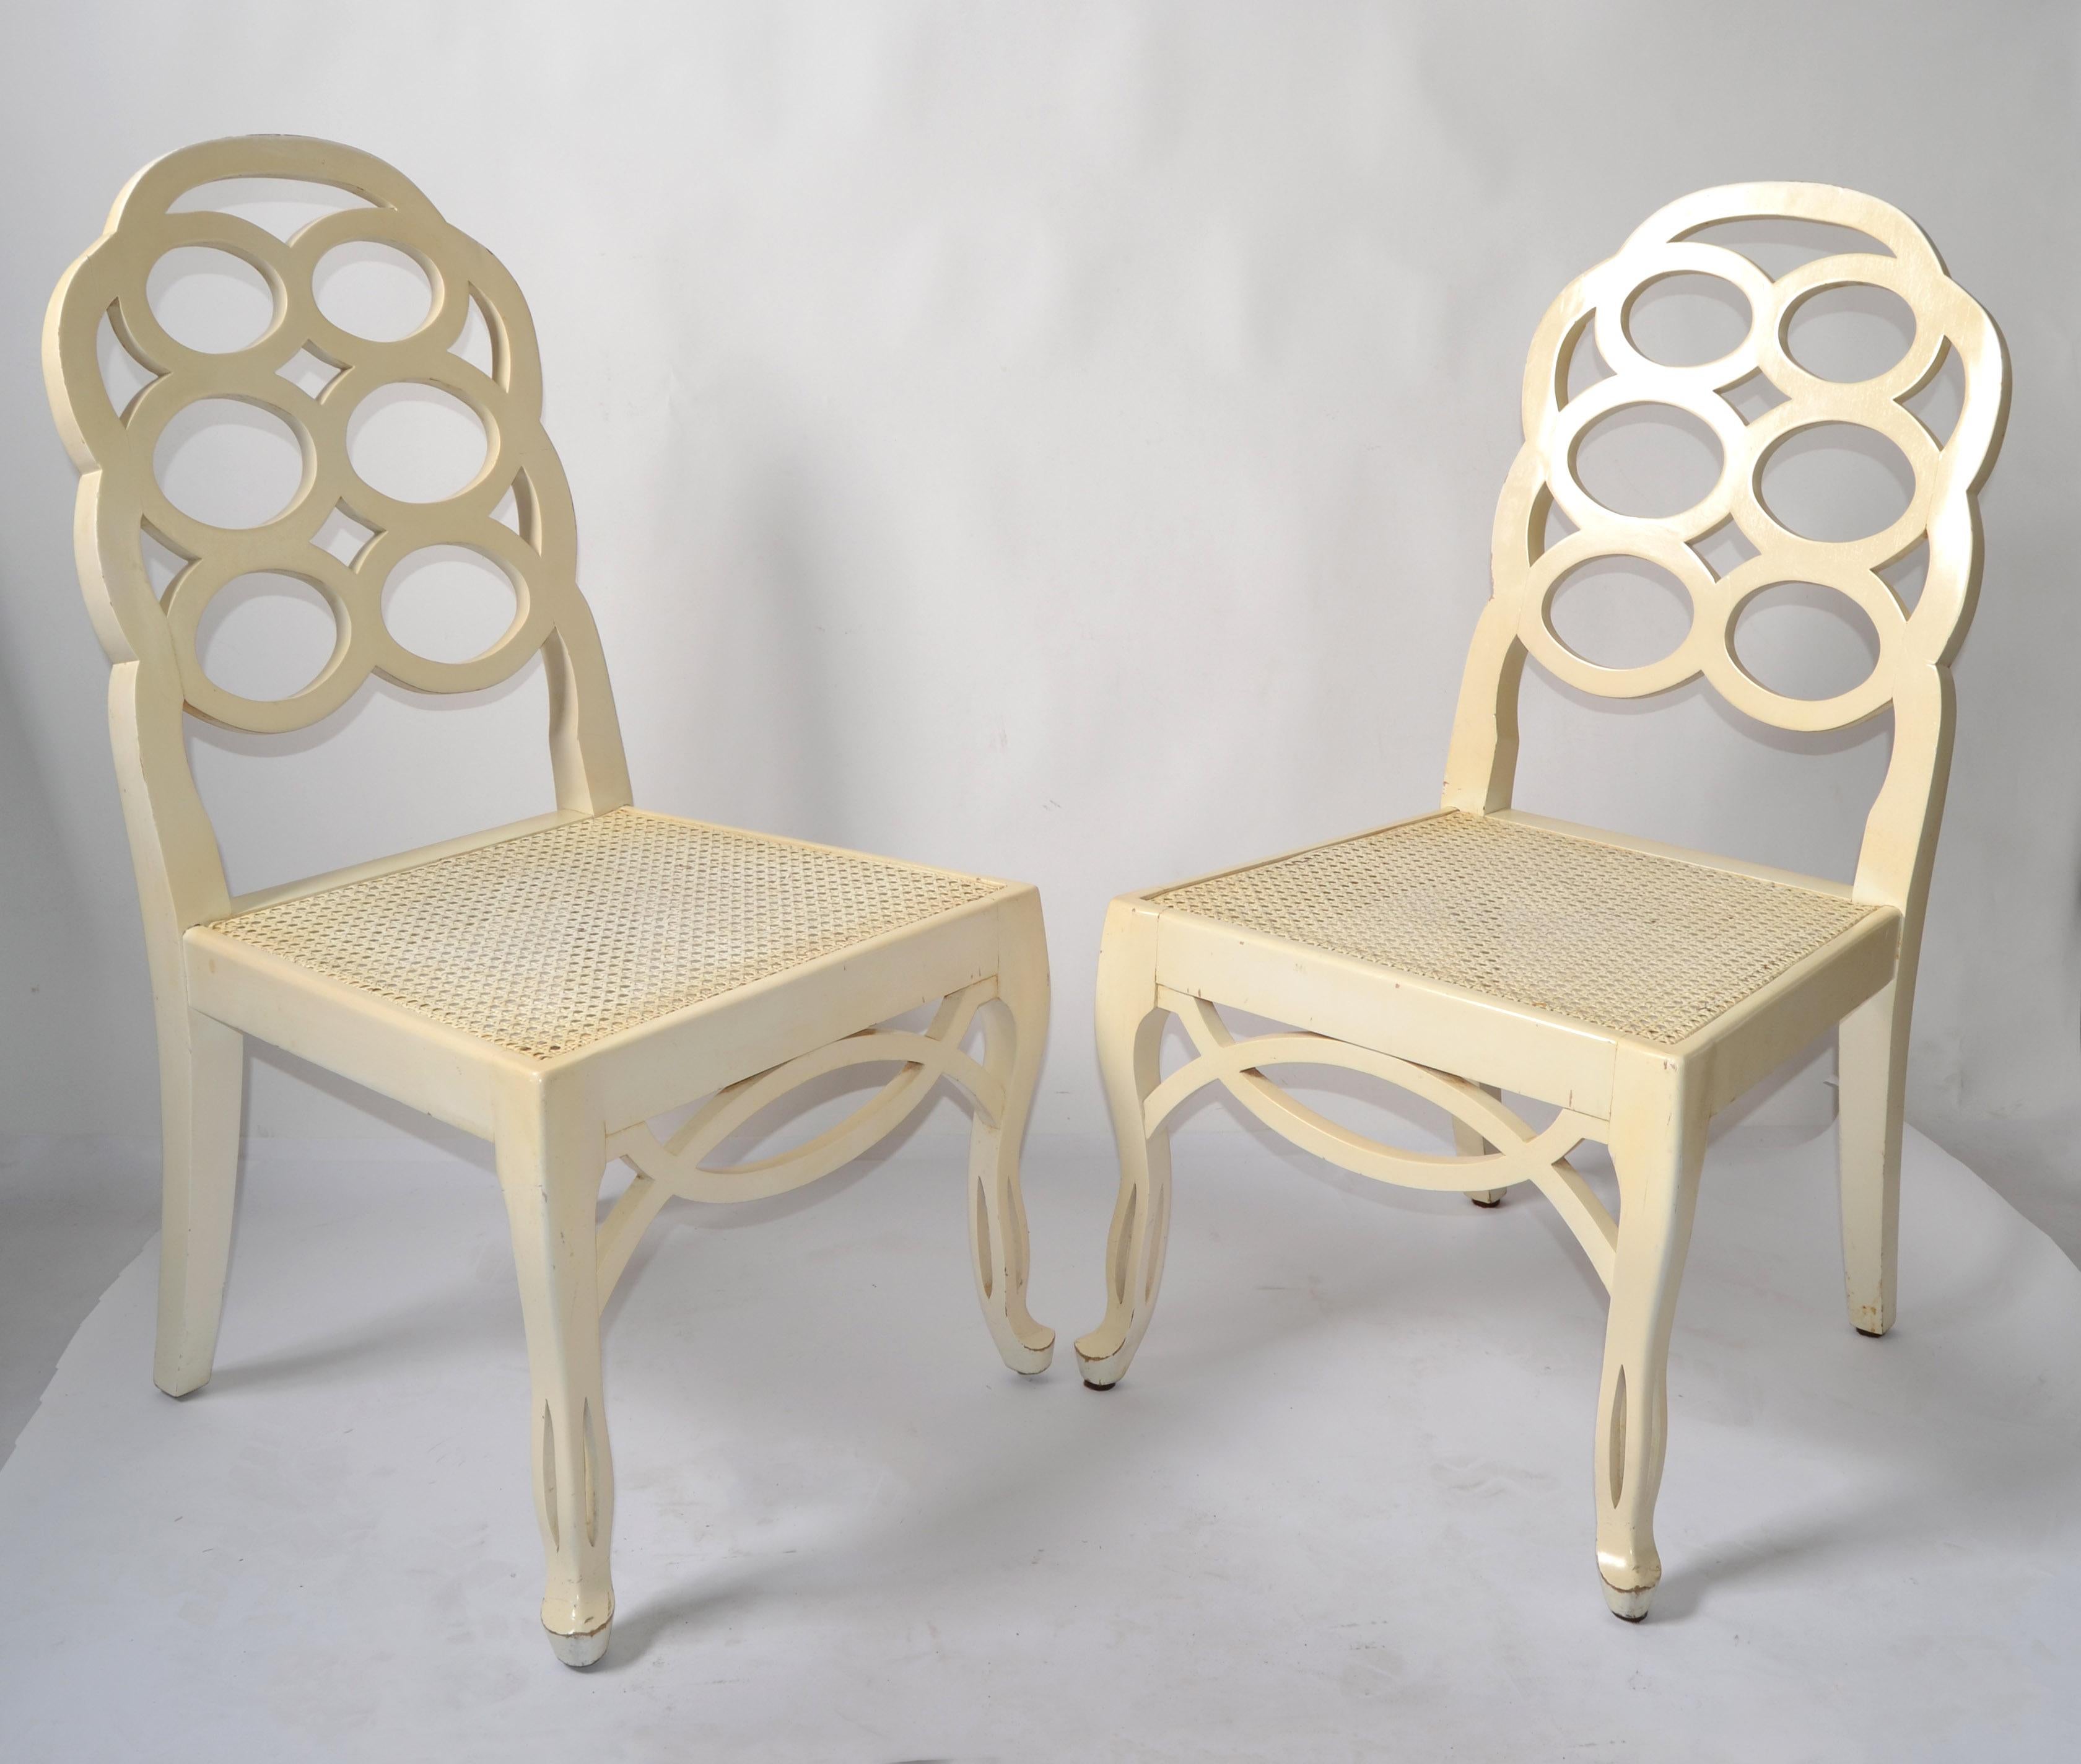 Paire de chaises d'appoint ou de salle à manger Looping de première édition, conçues par Frances Elkins et fabriquées en Espagne vers 1965.
D'époque Régence, avec des pieds sculptés à la main, une décoration en tablier et tous deux avec le siège